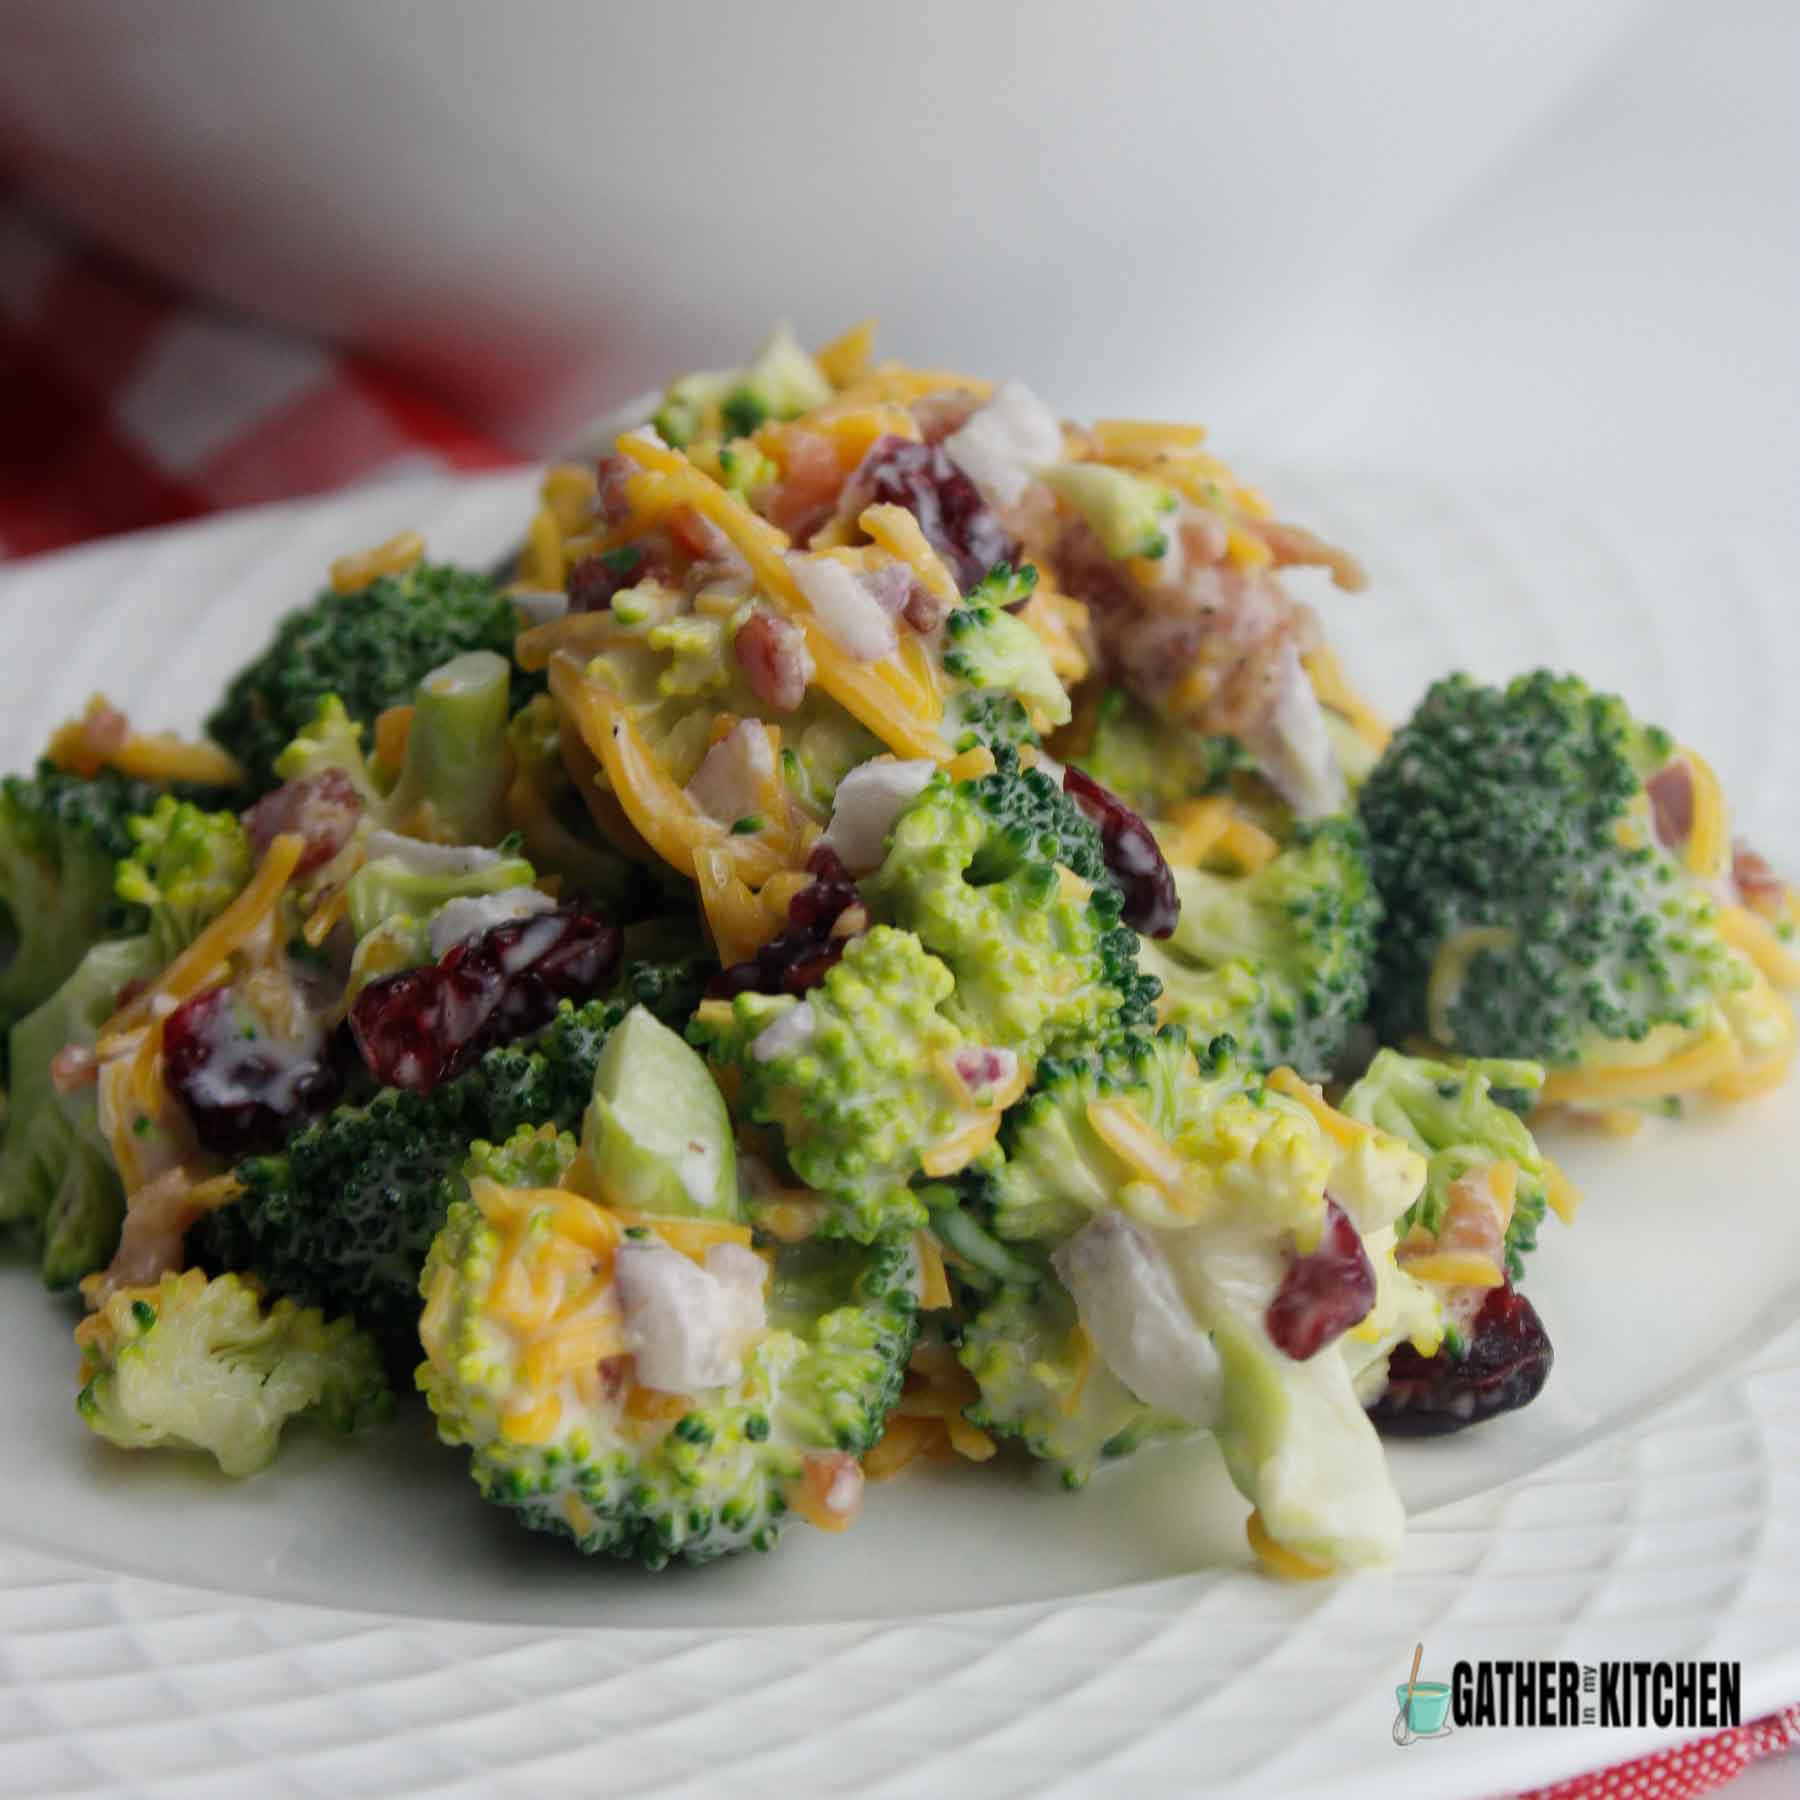 Broccoli salad on plate.